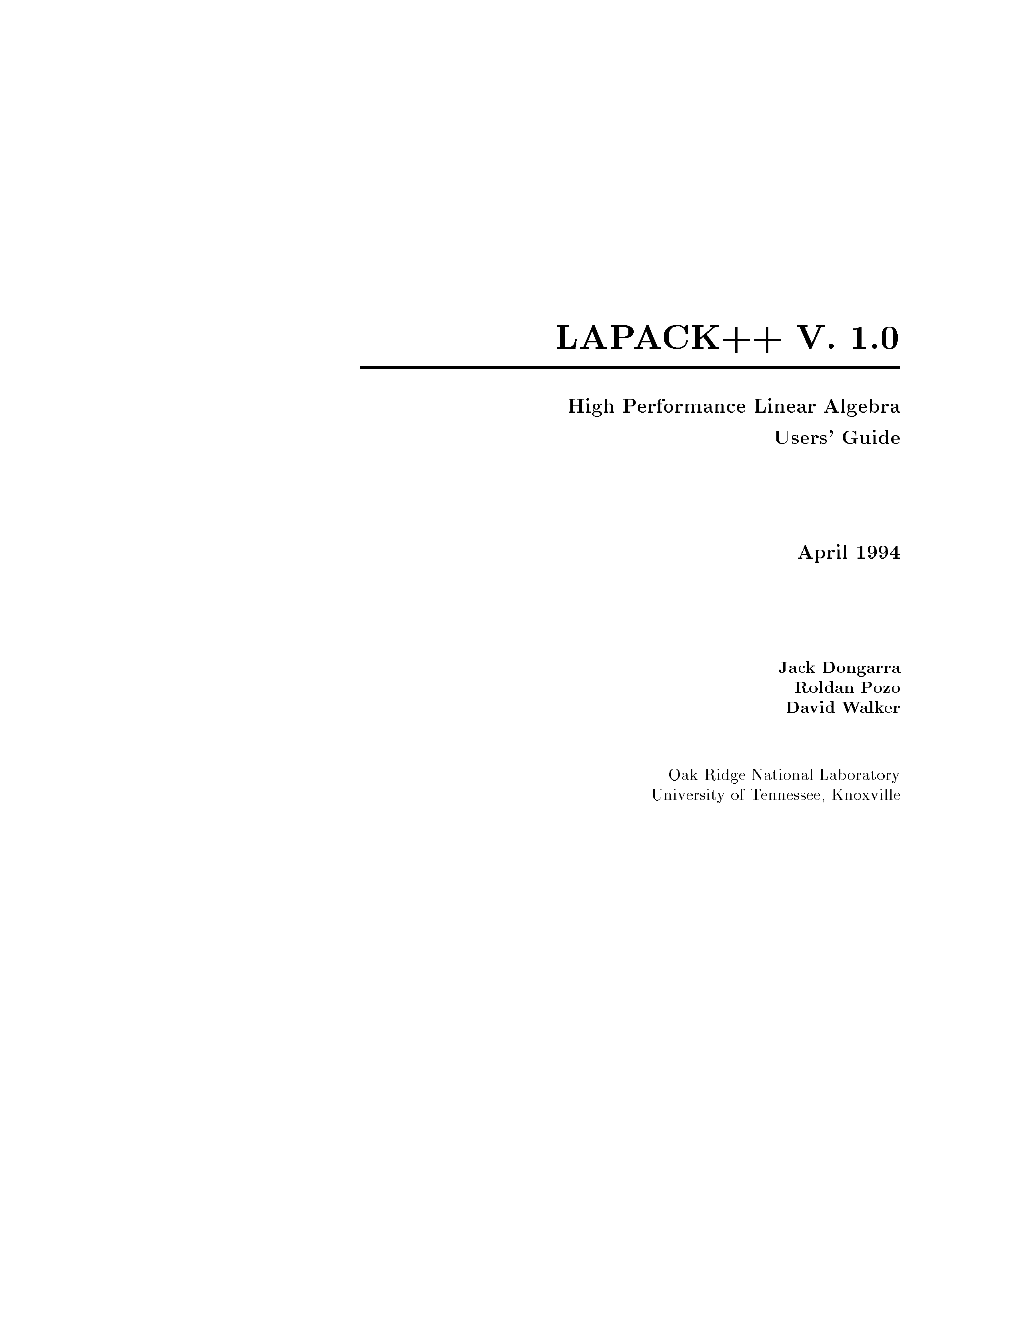 Lapack++ V. 1.0